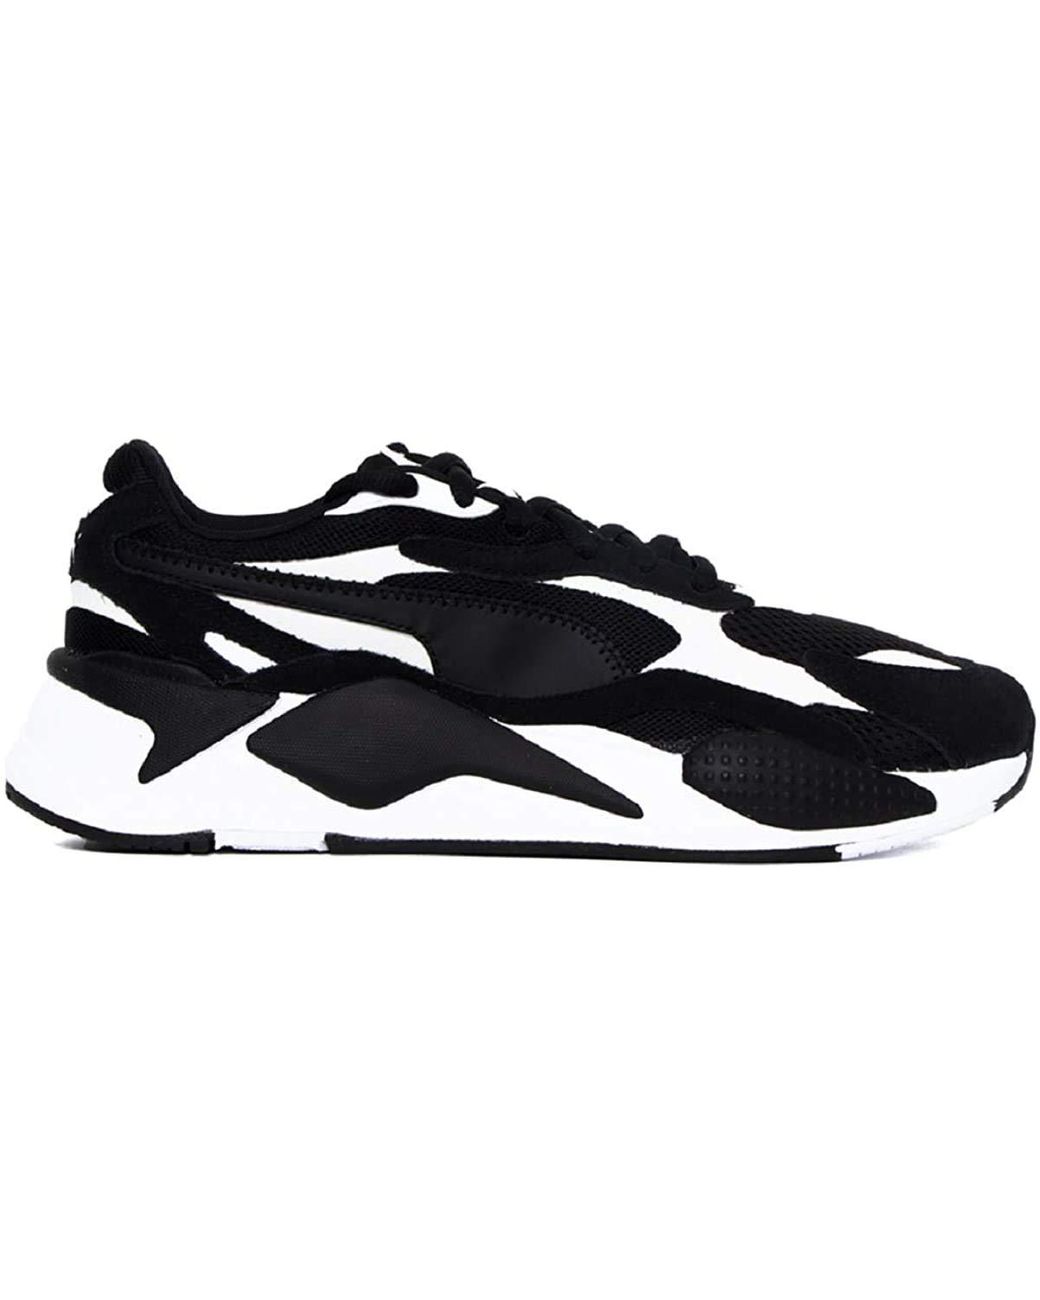 PUMA Rs-x3 Super Sneakers in Black | Lyst UK